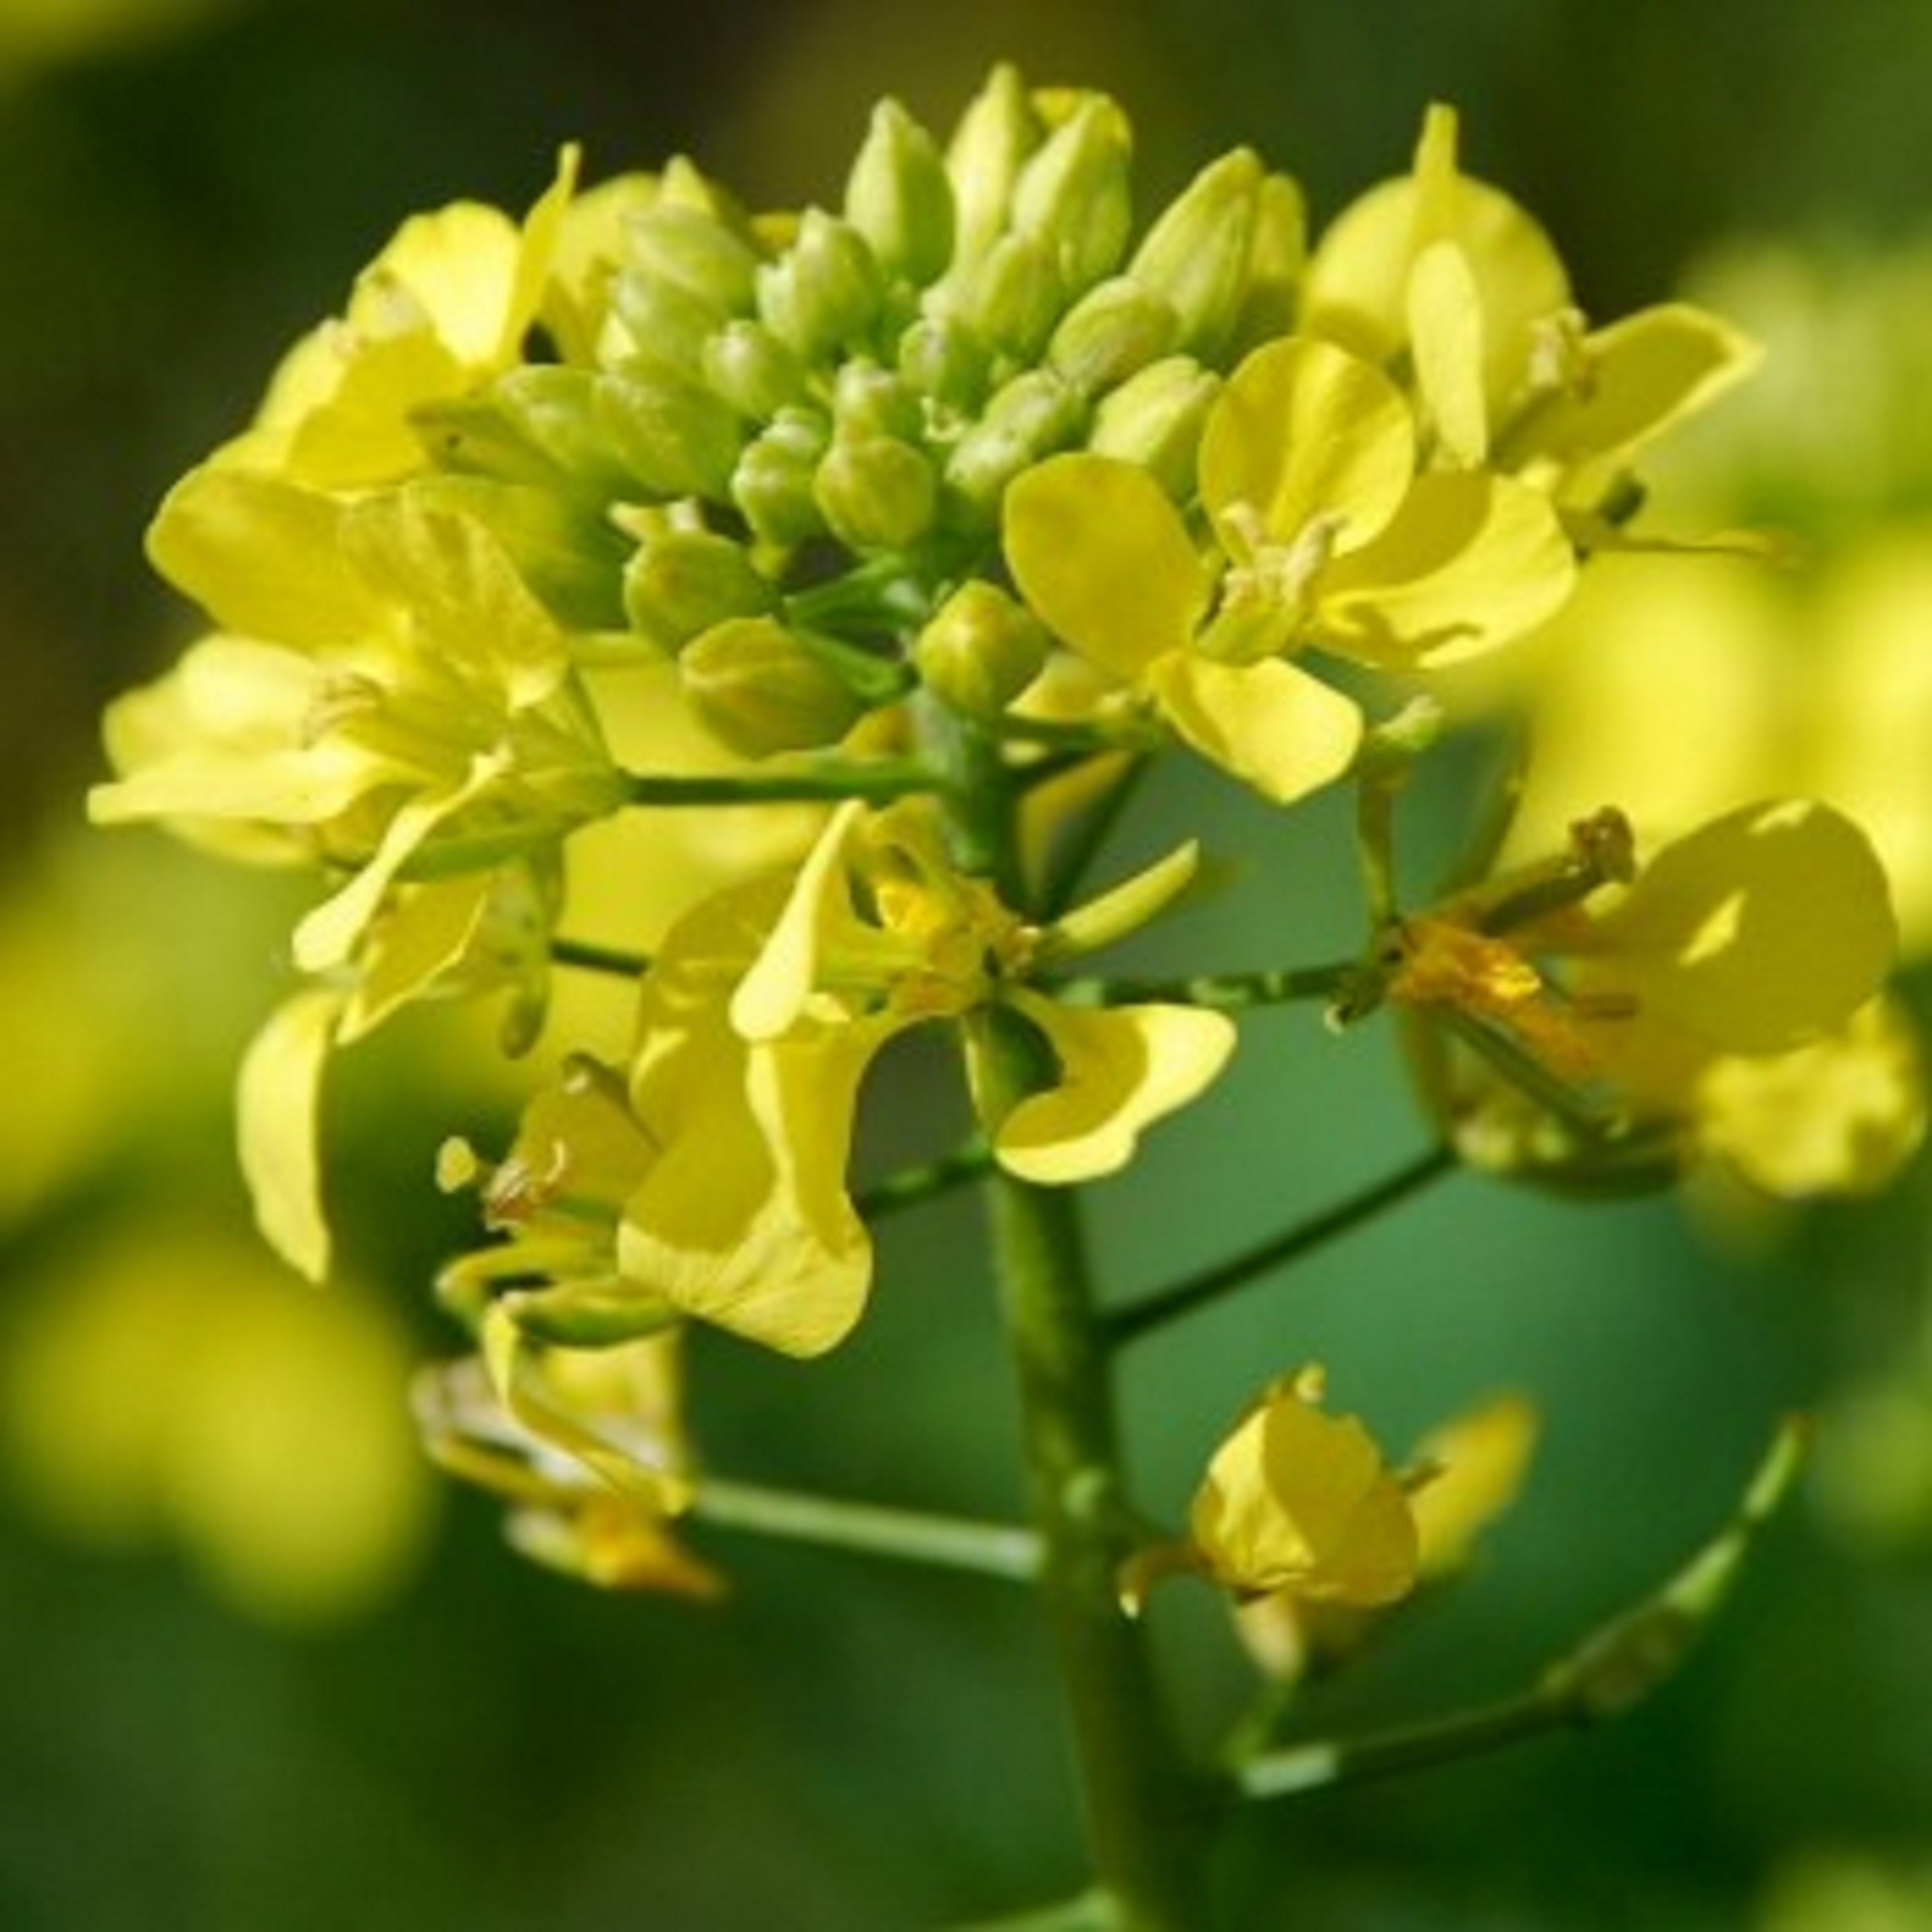 500 Graines de Moutarde Noire - Plantes Aromatique Potager Semences Paysannes Organic Seeds